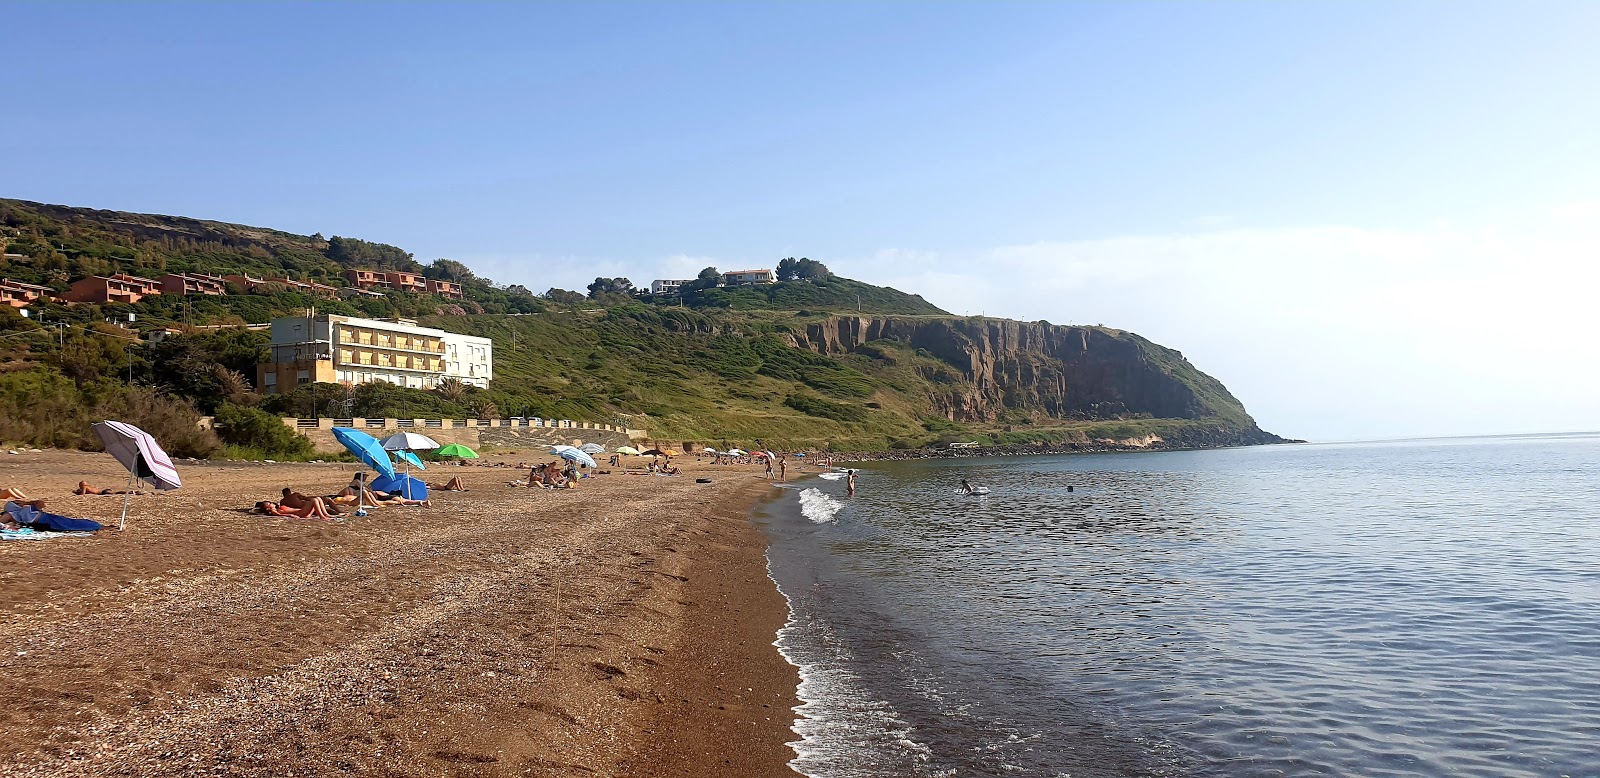 Fotografija Turas beach priljubljeno mesto med poznavalci sprostitve